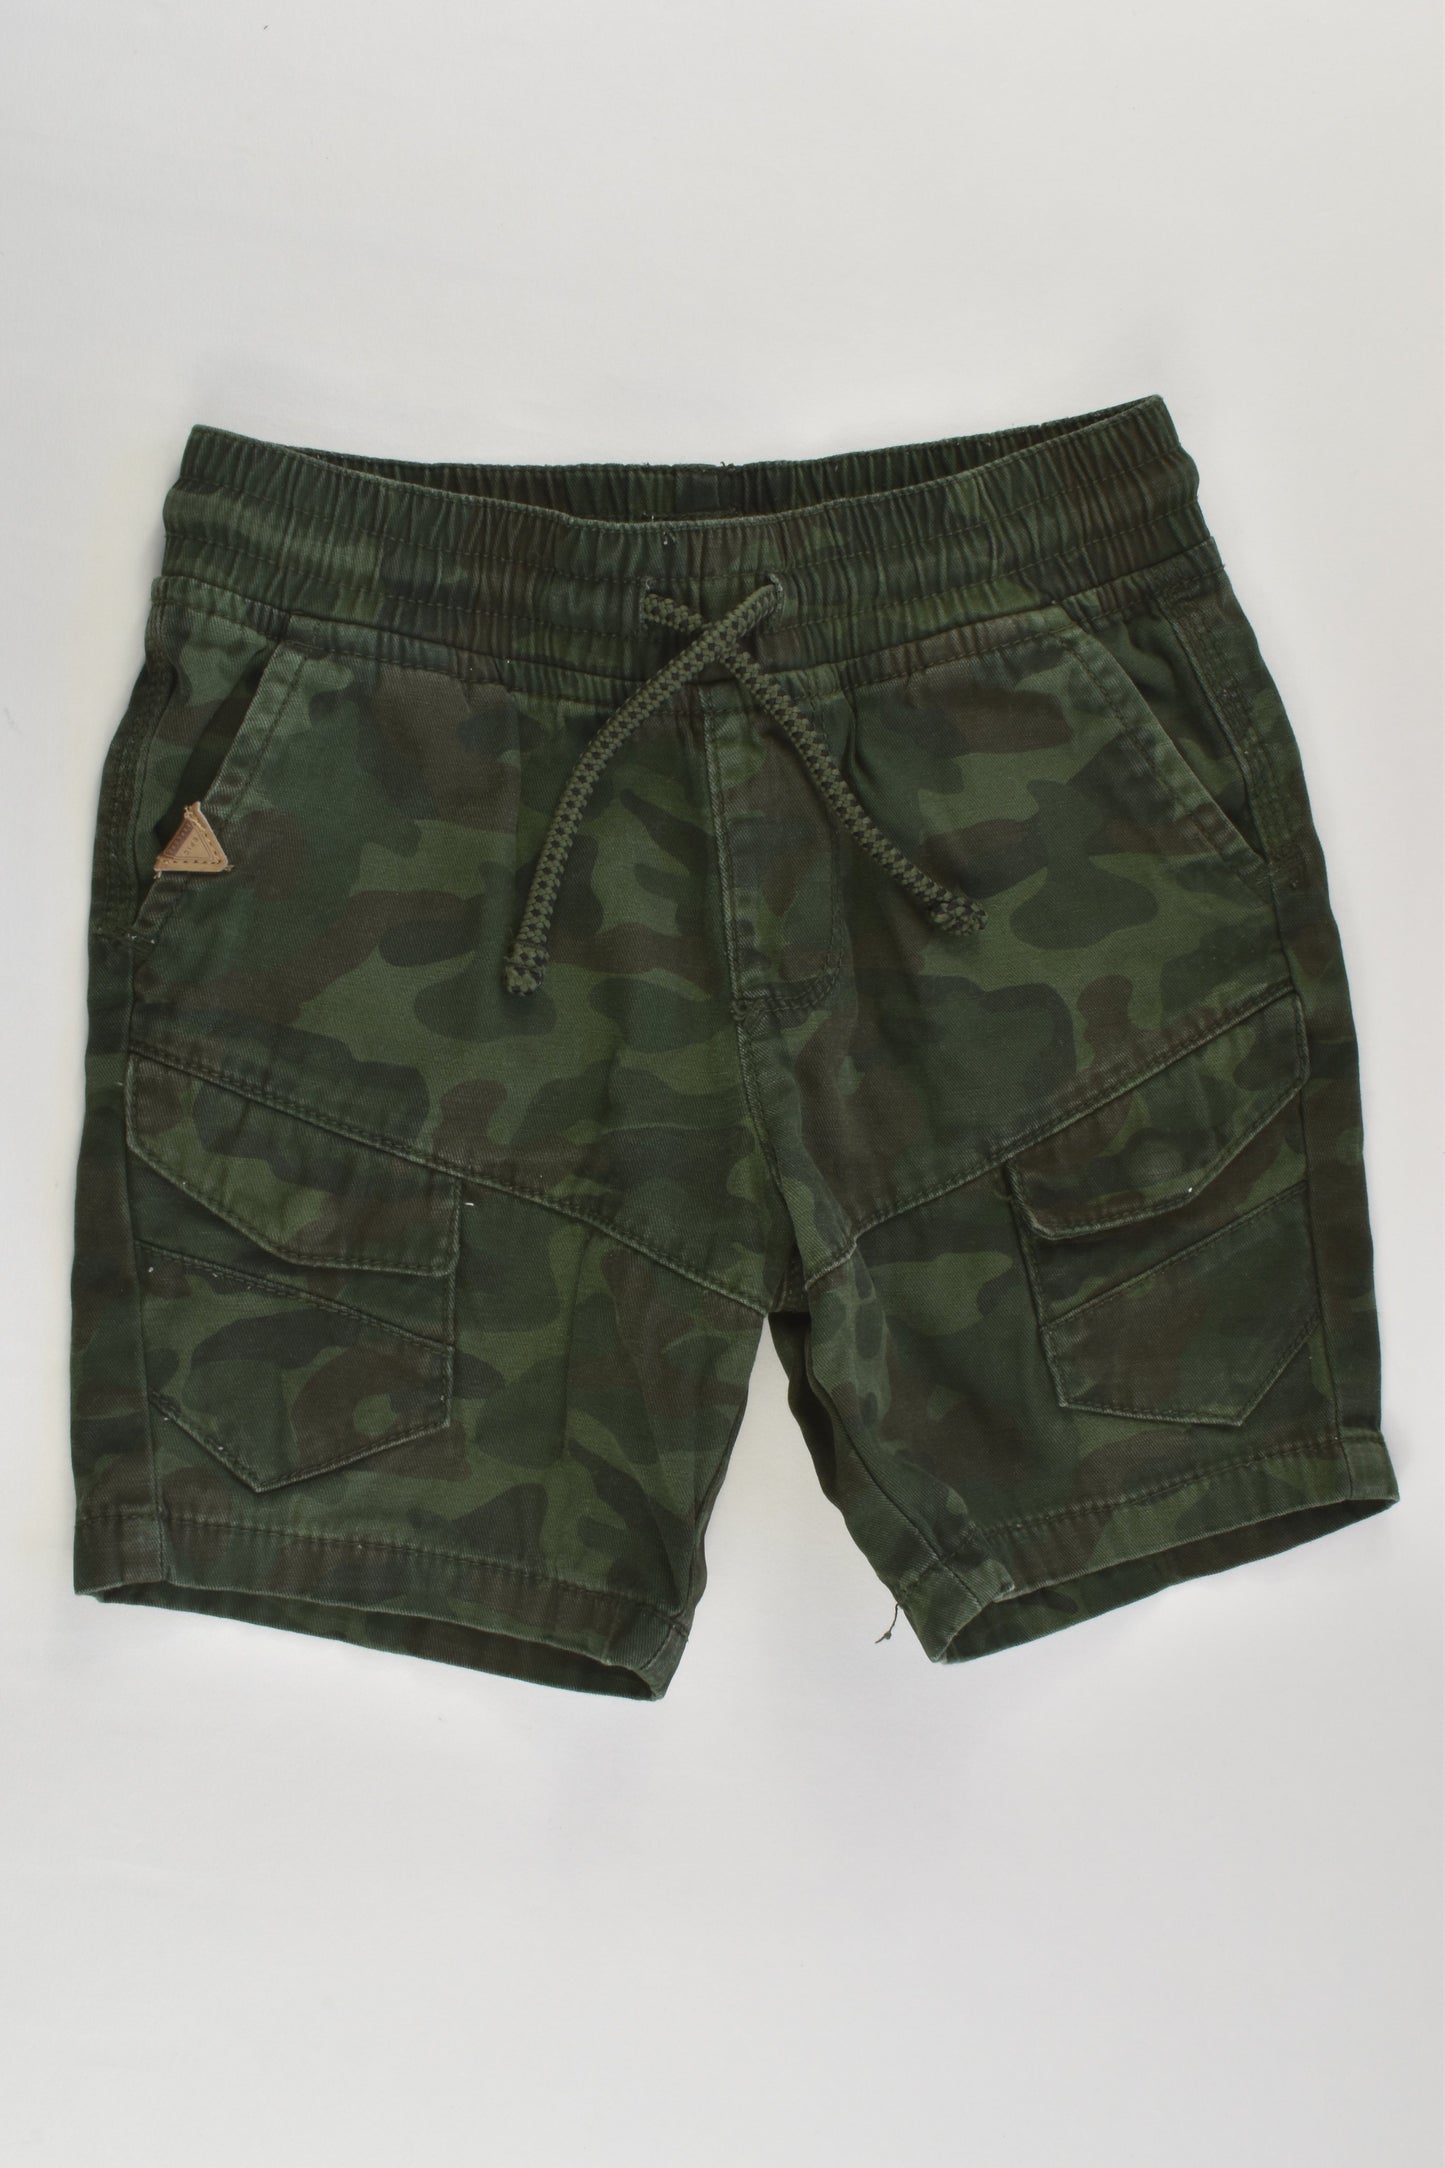 Target Size 4 Camouflage Shorts